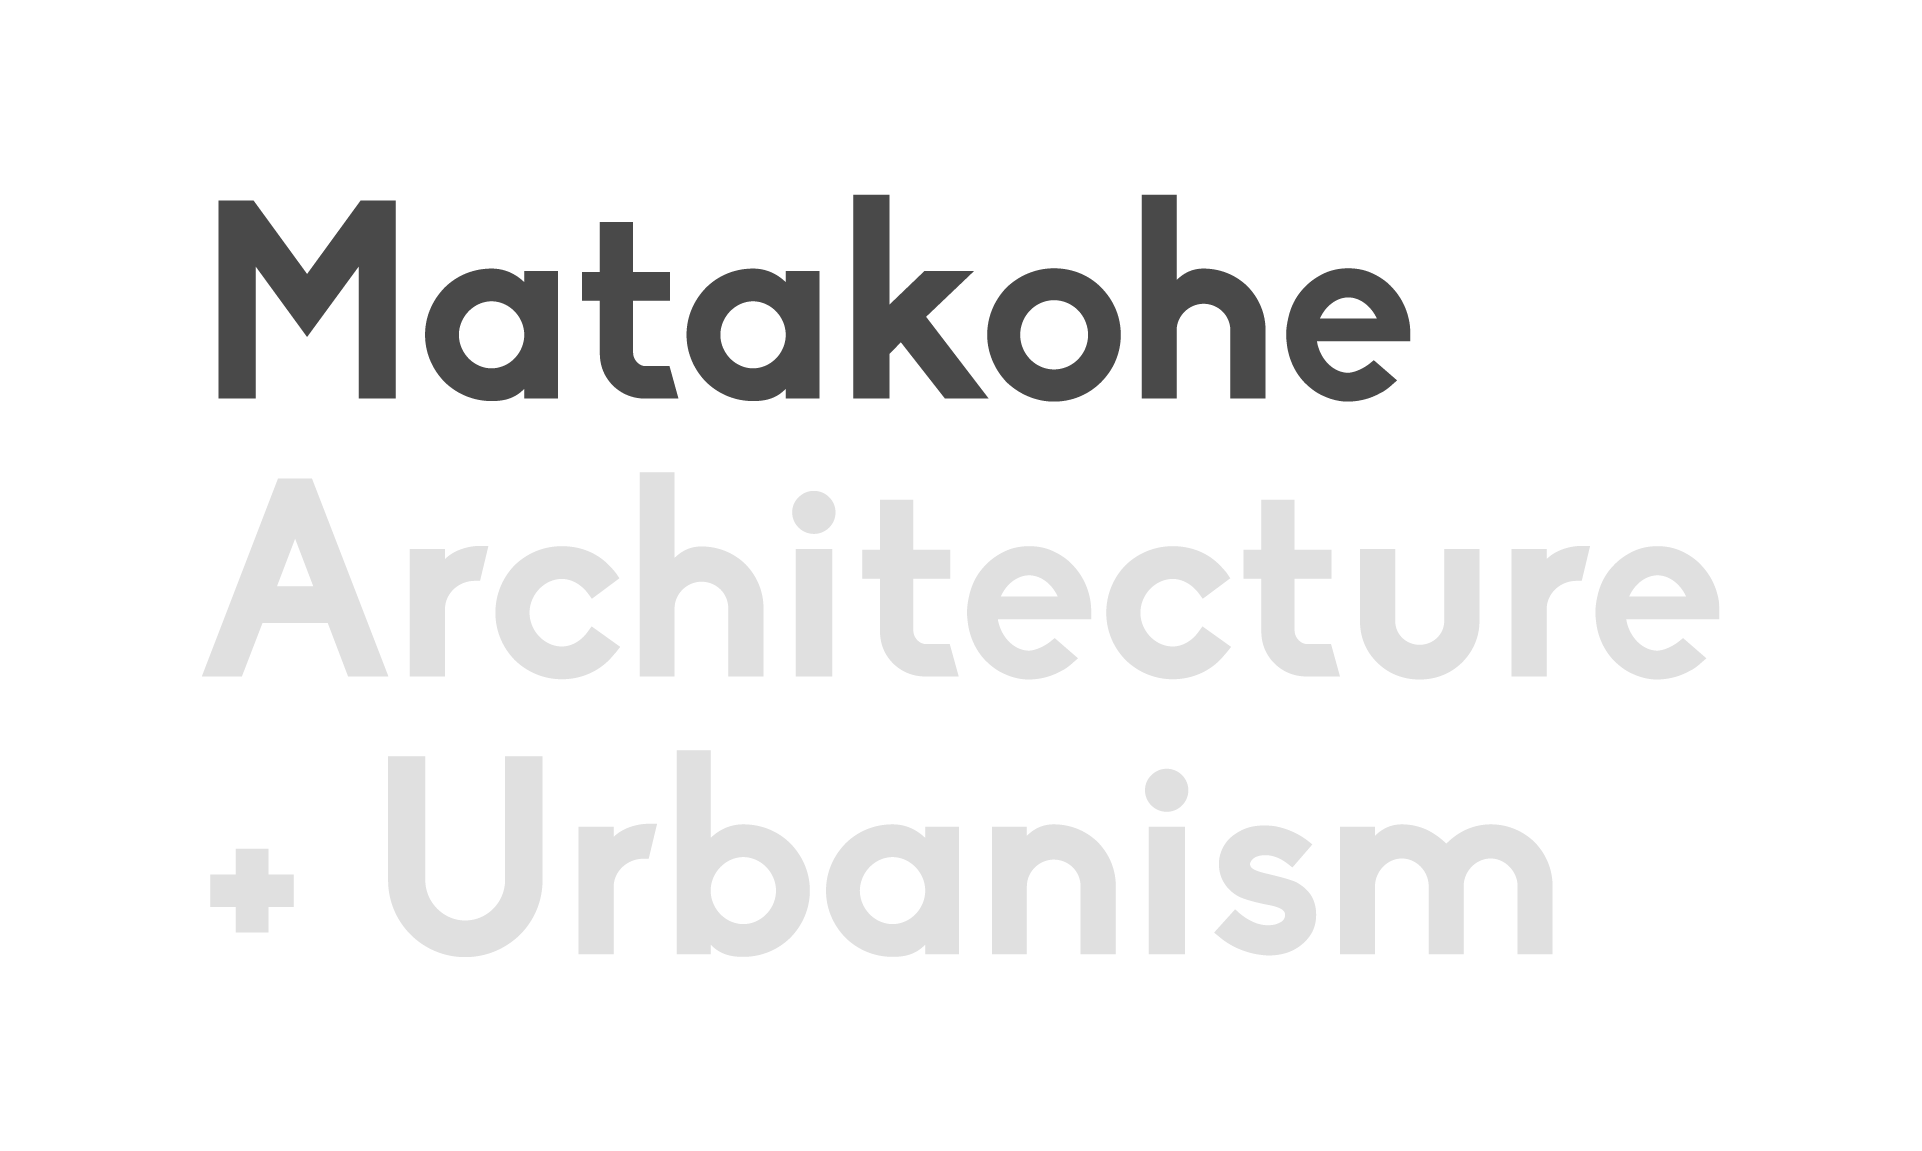 matakohe architecture + urbanism